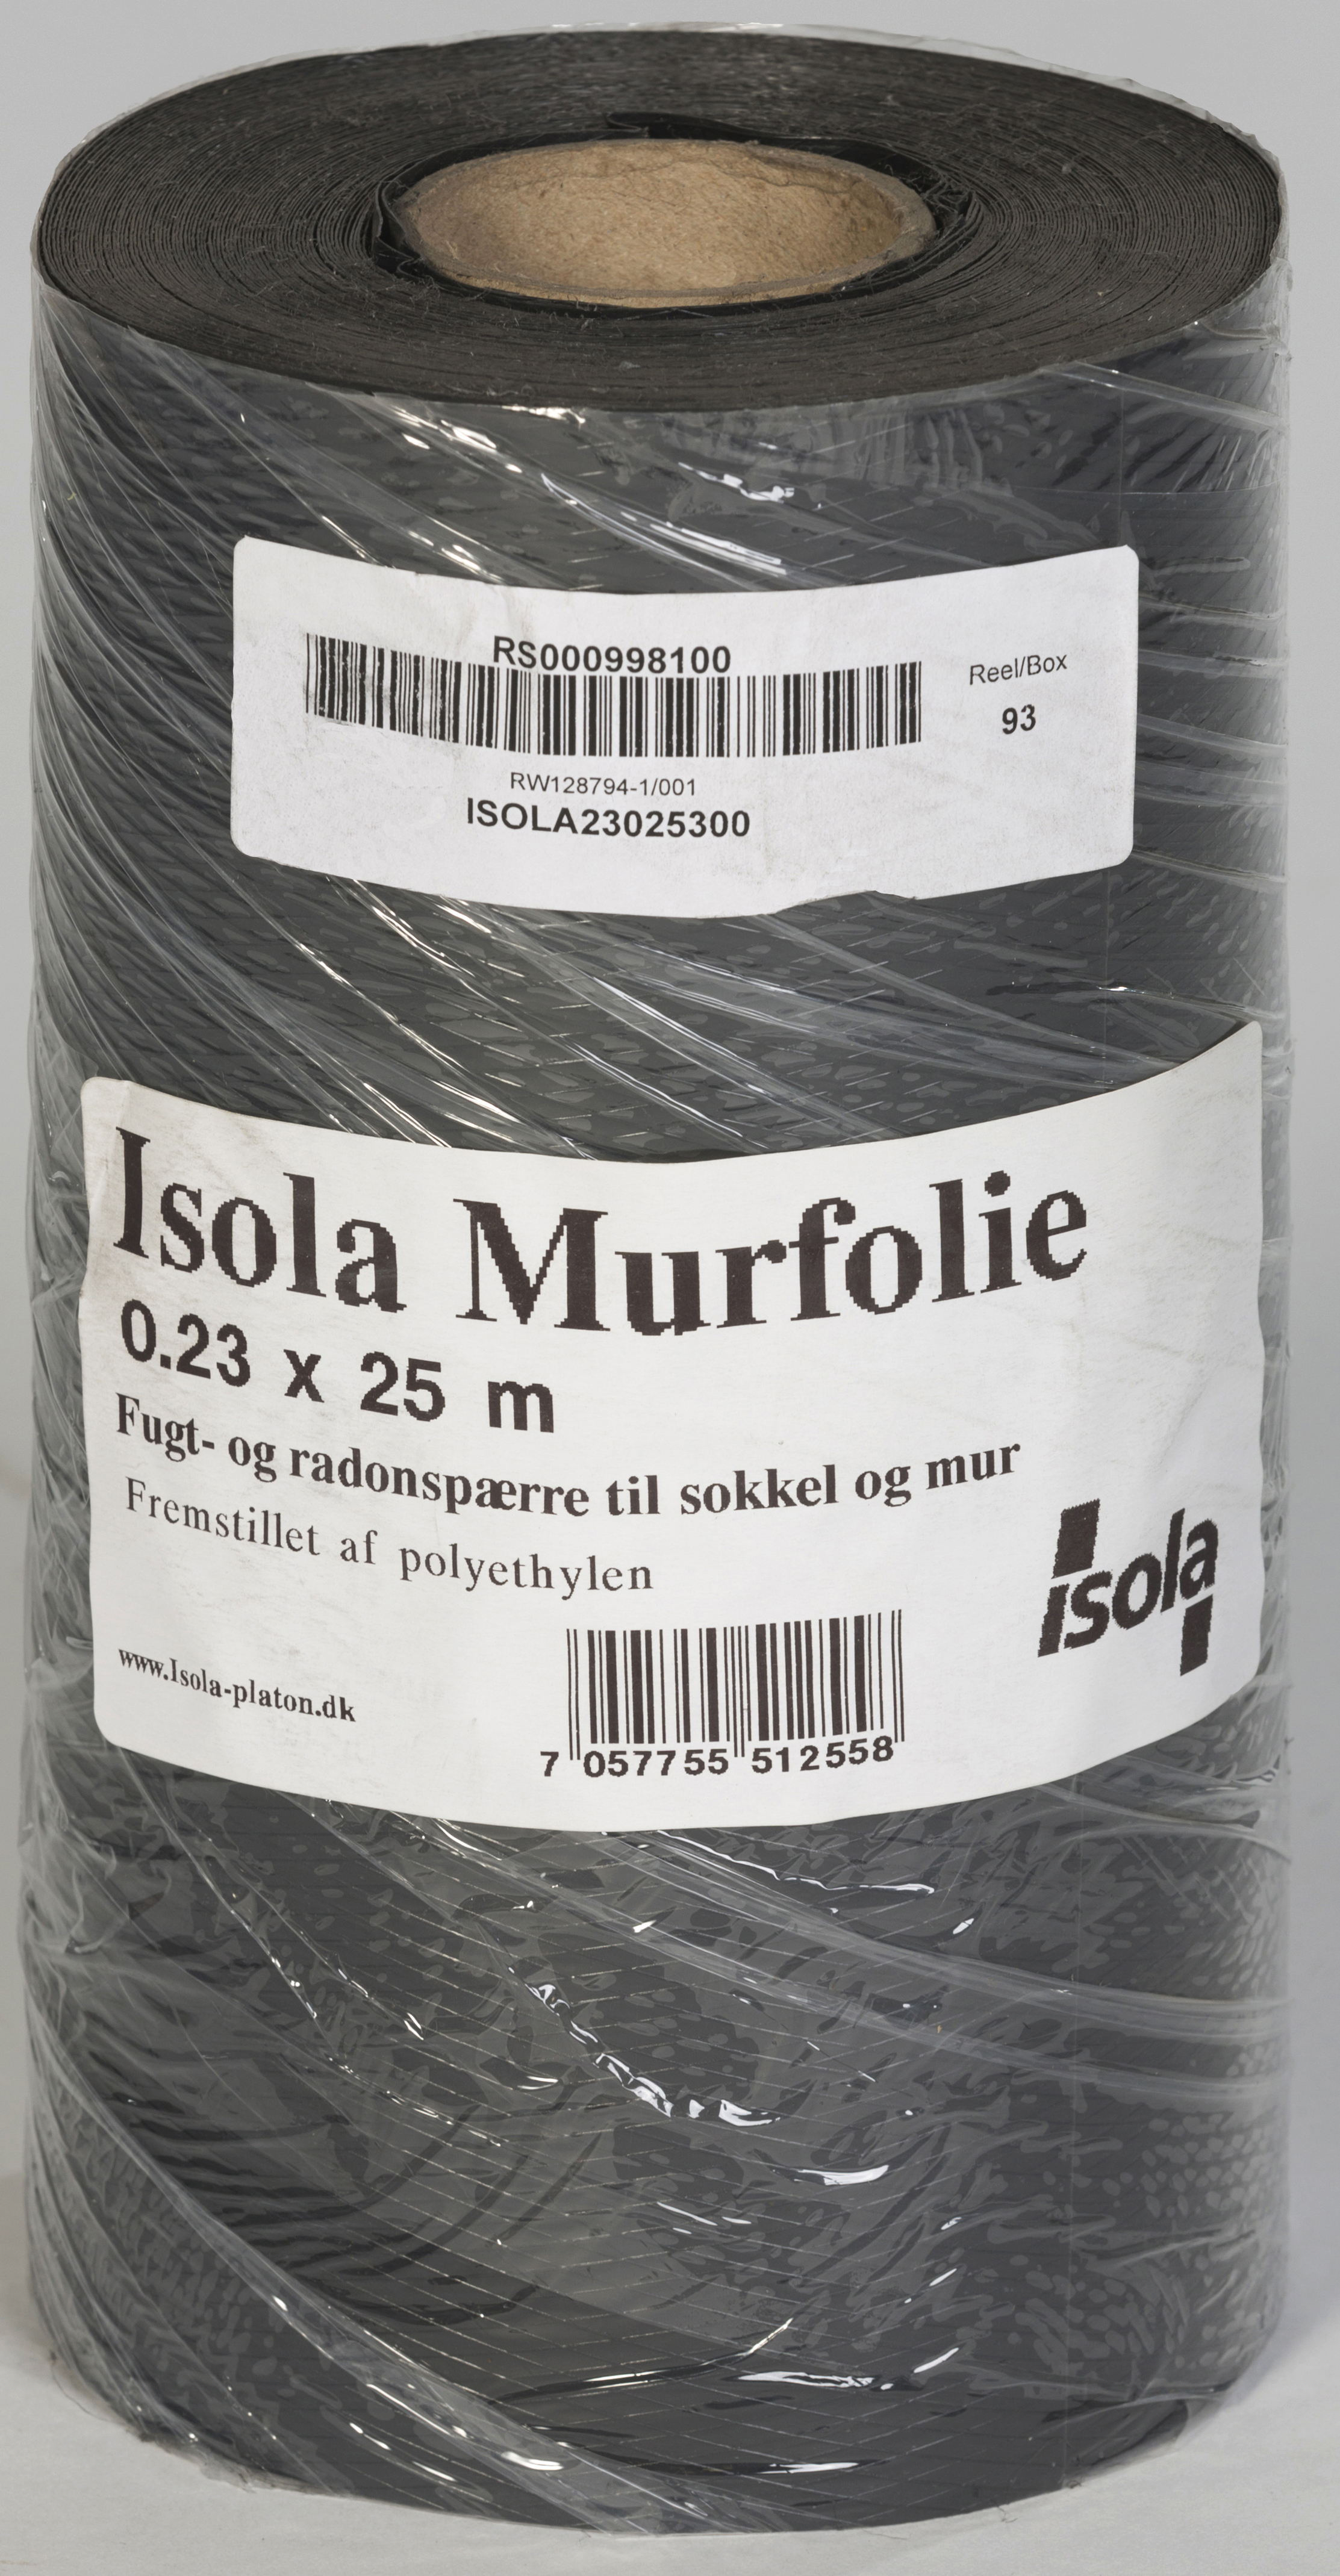 Produkt miniatyrebild Isola Murfolie 0,23x25m for bunnsvill, overgang grunnmur/vegg